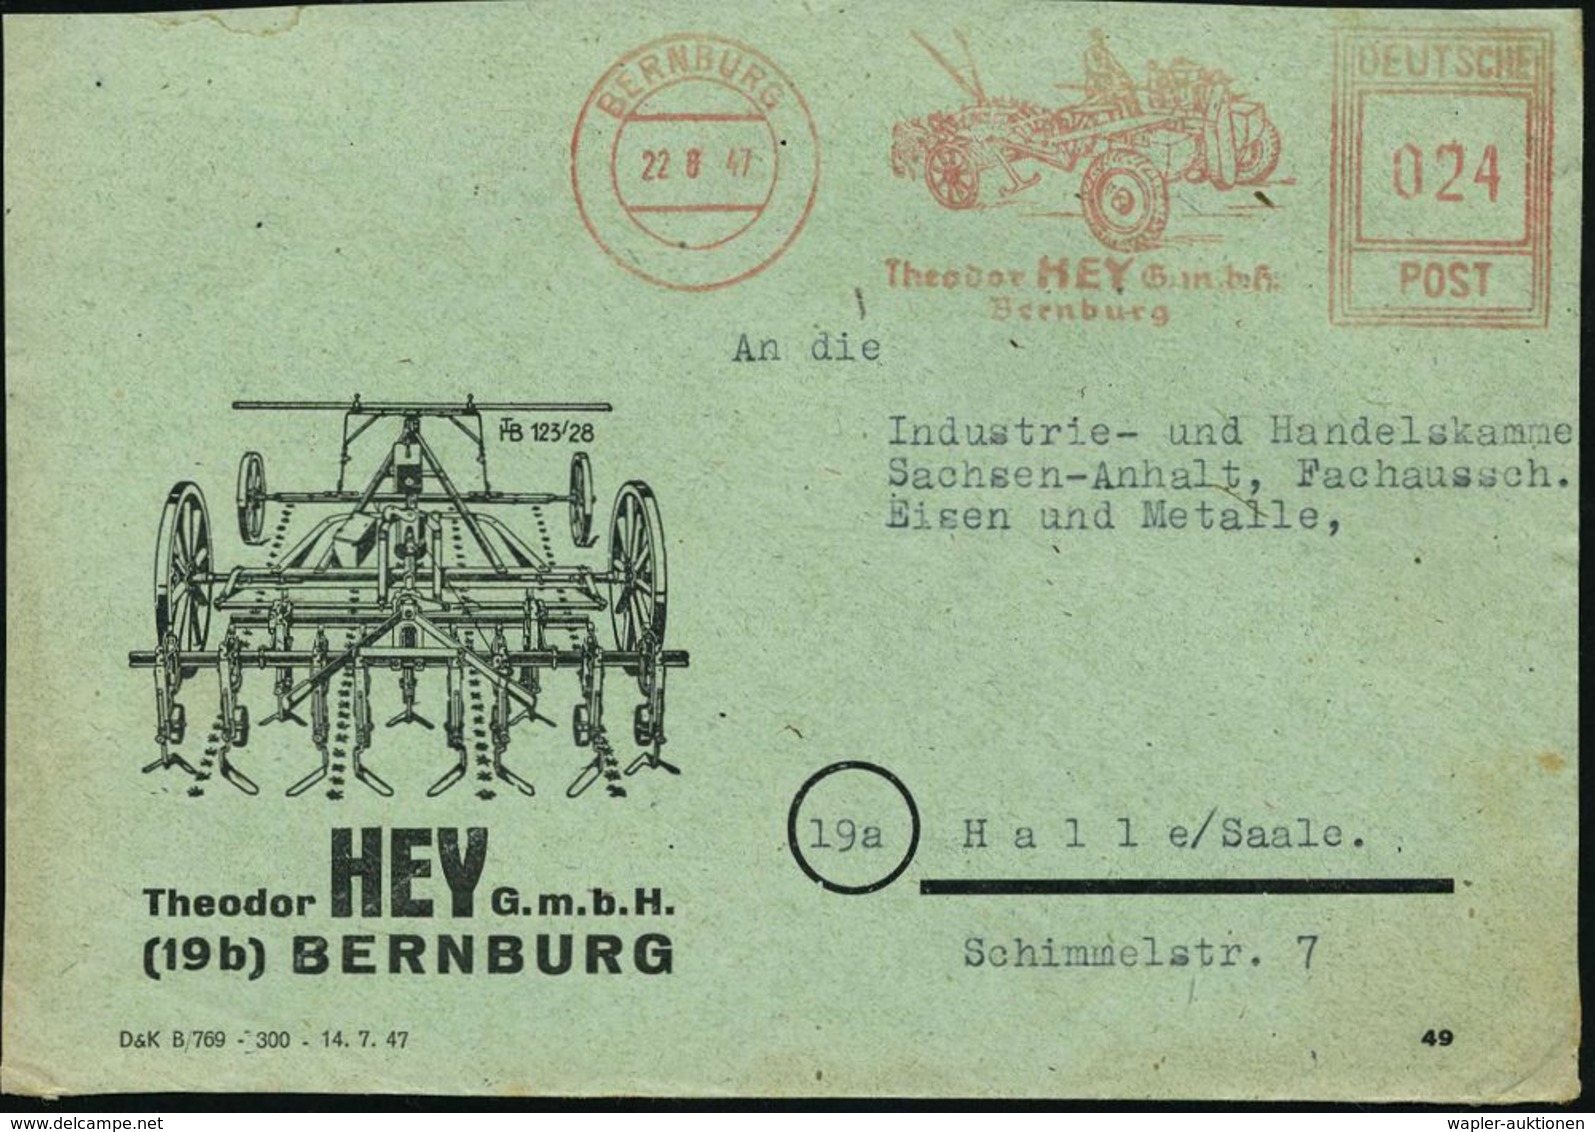 TRAKTOR / RAUPENSCHLEPPER : BERNBURG/ Theodor HEY GmbH 1947 (22.6.) Seltener AFS-Typ "Hochrechteck" (Spezial-Traktor) Au - Autos